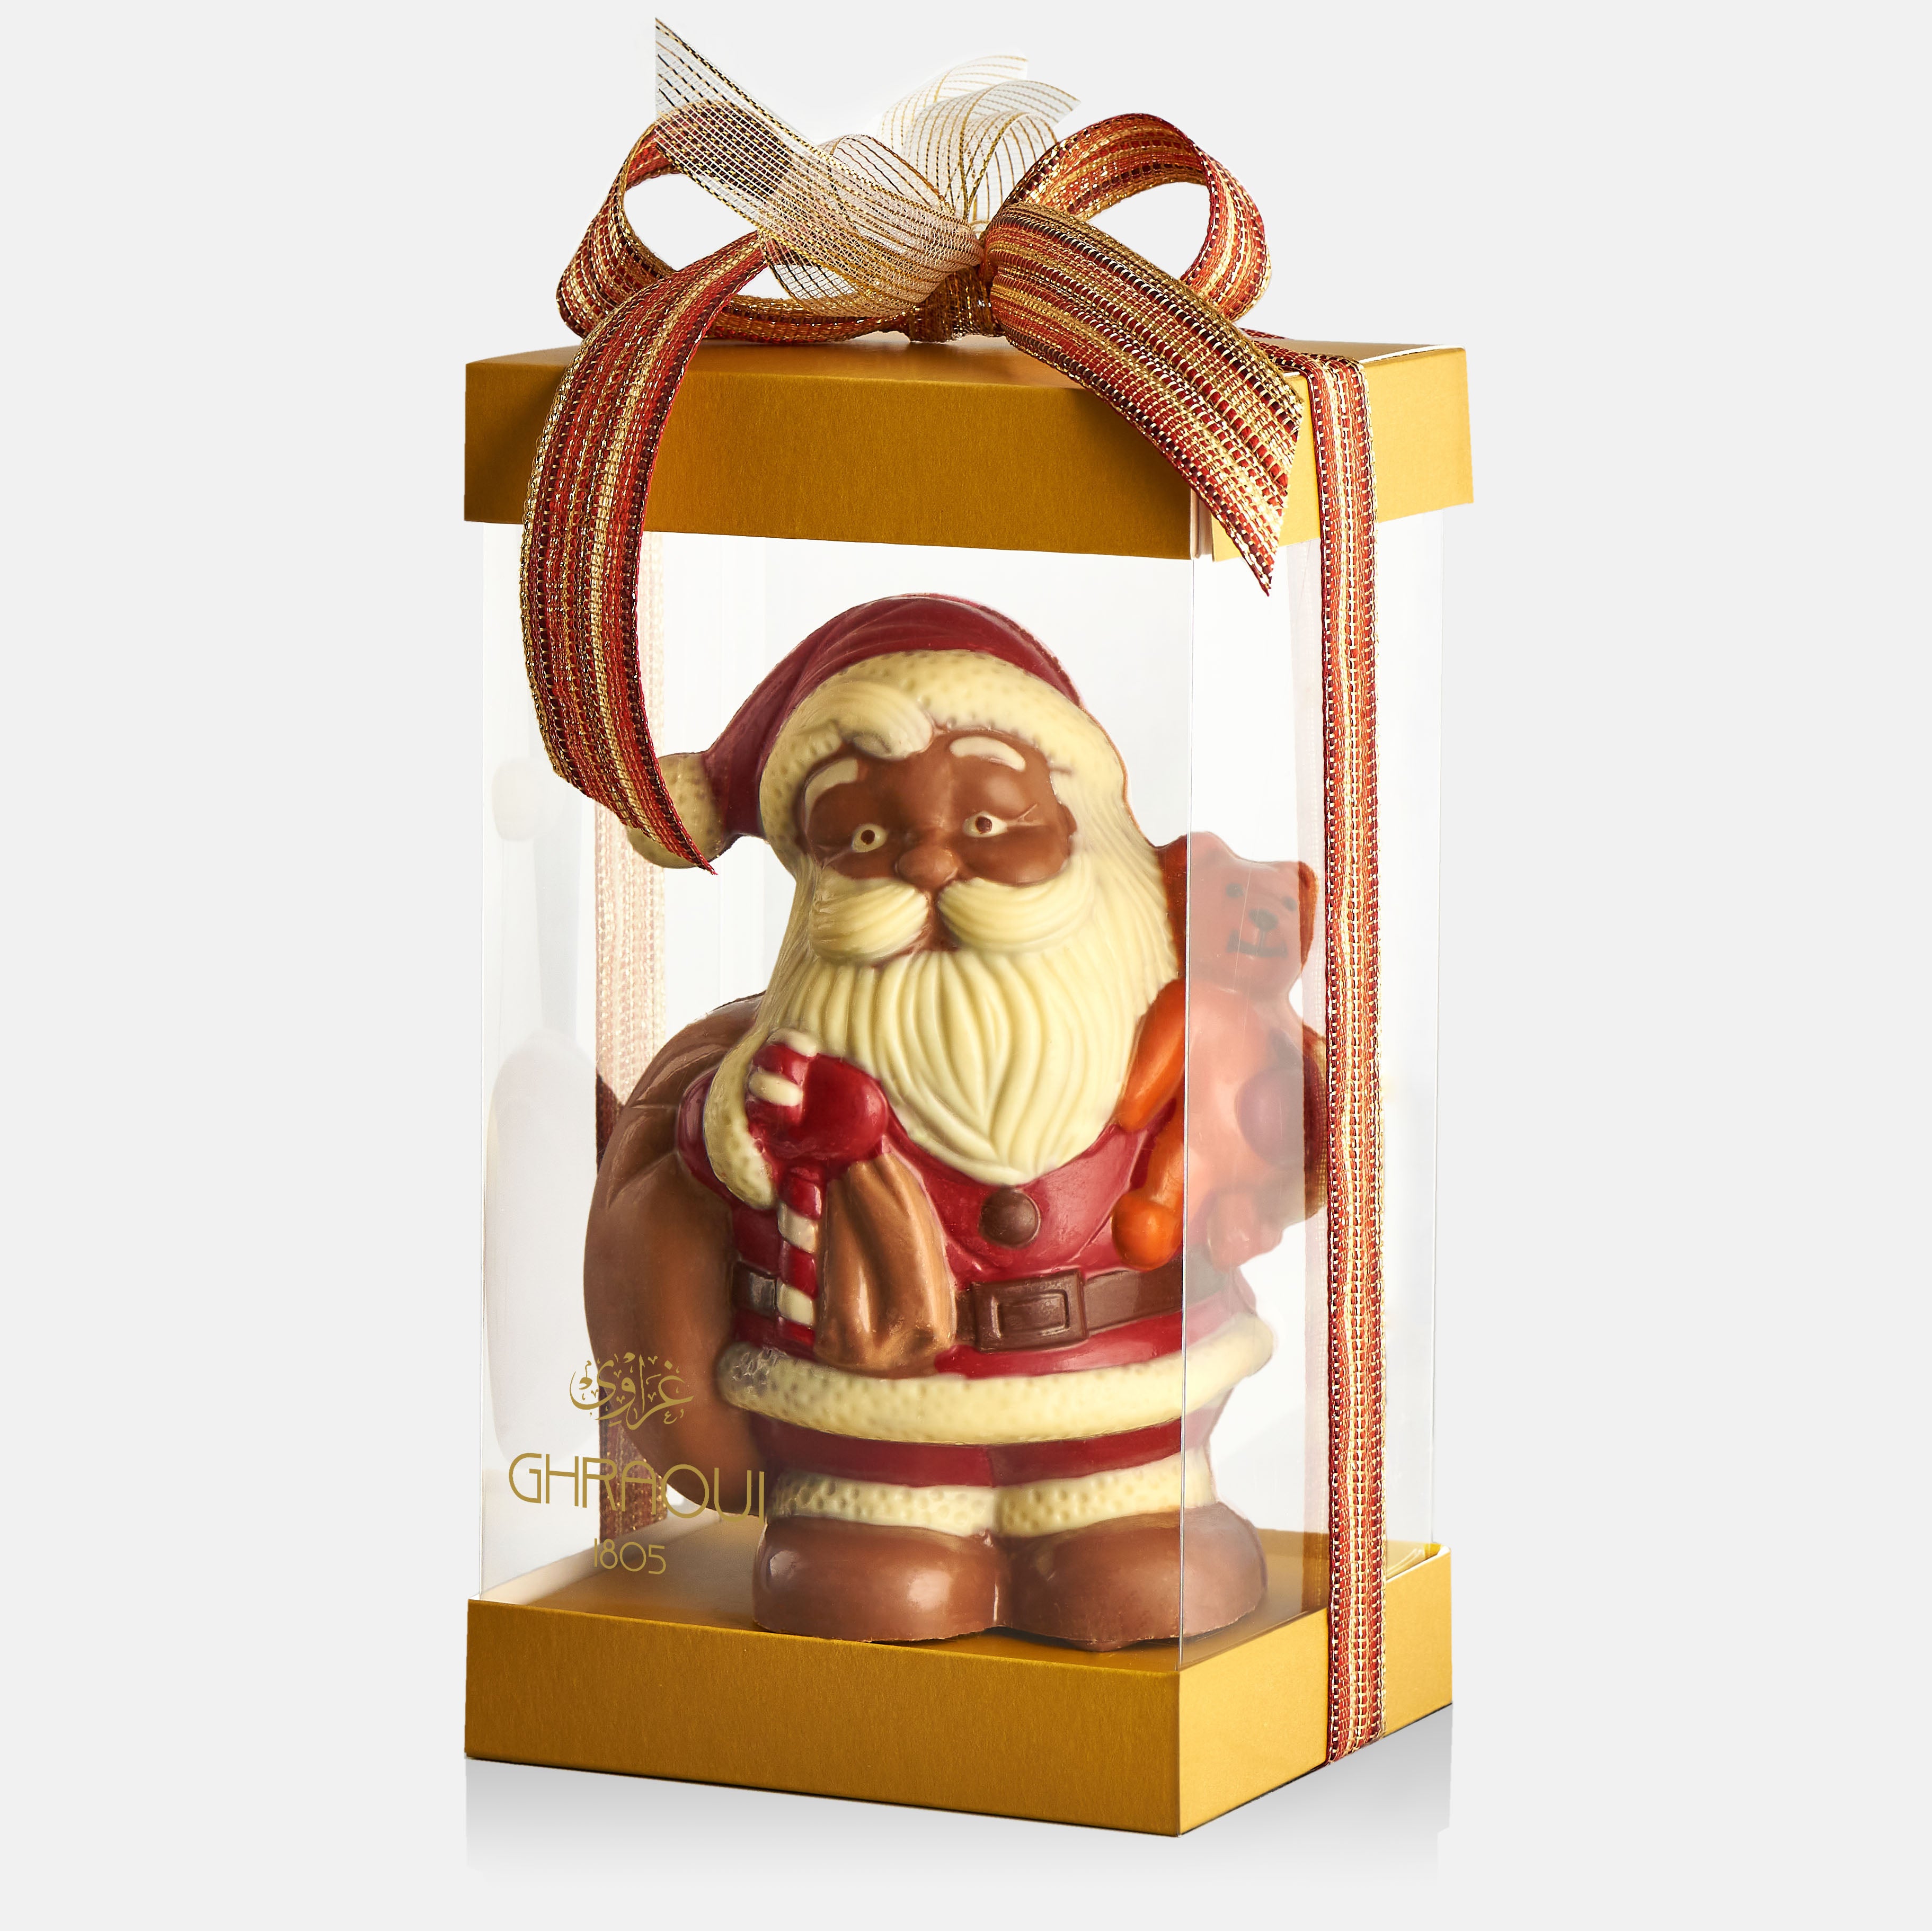 Chocolate Santa with a Teddy bear